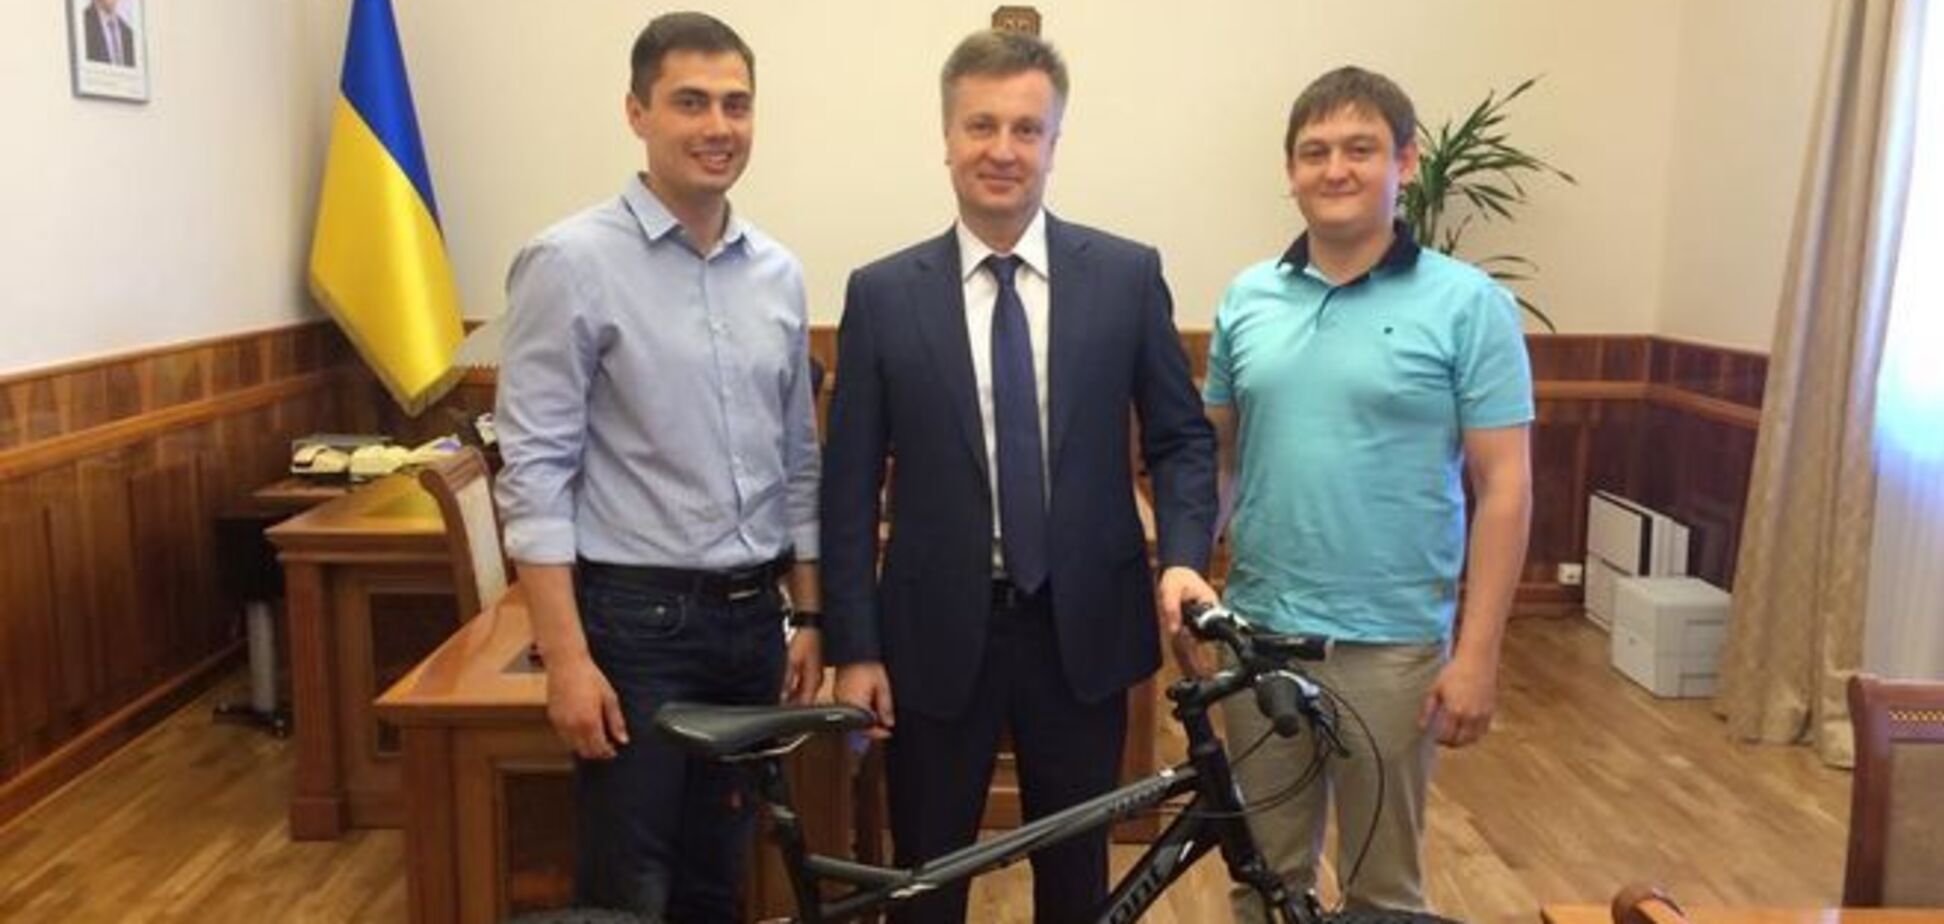 Наливайченко будет ездить на работу на велосипеде?